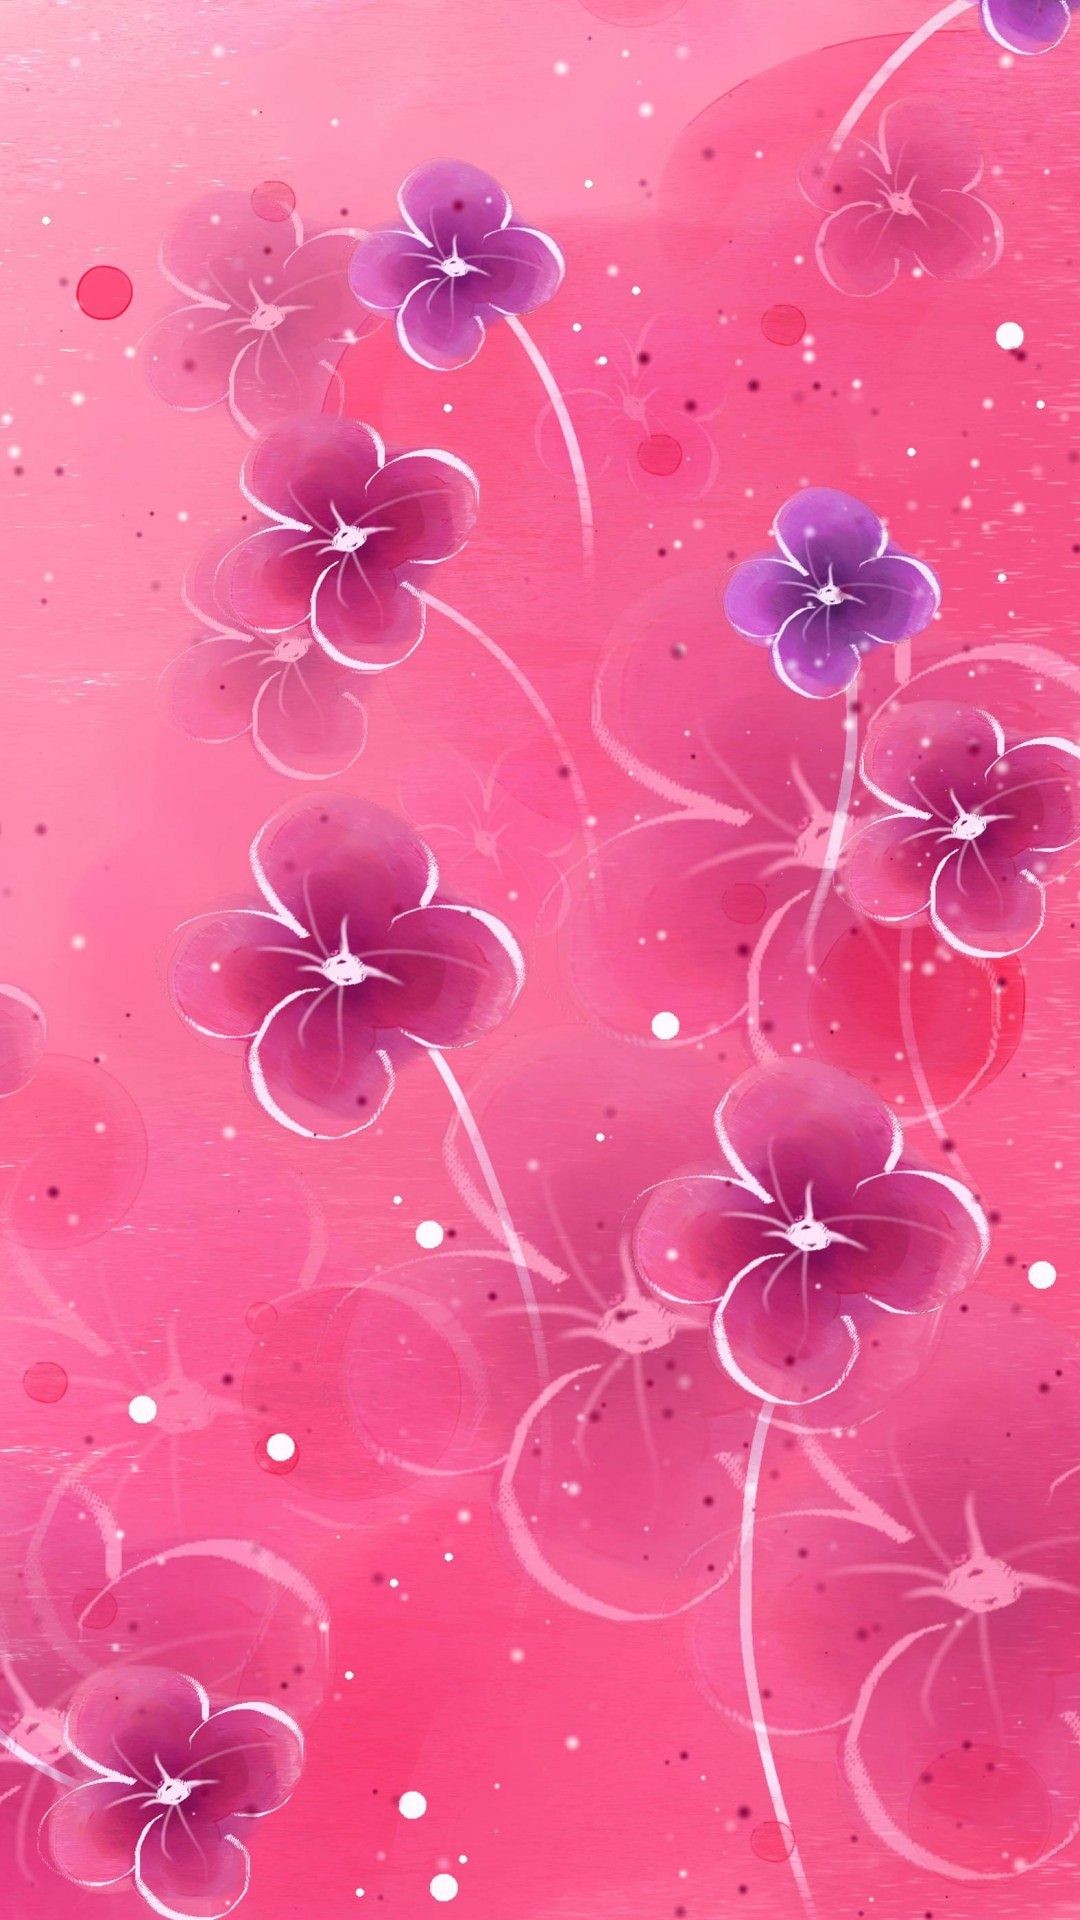 1080x1920 pink flower wallpaper #7404